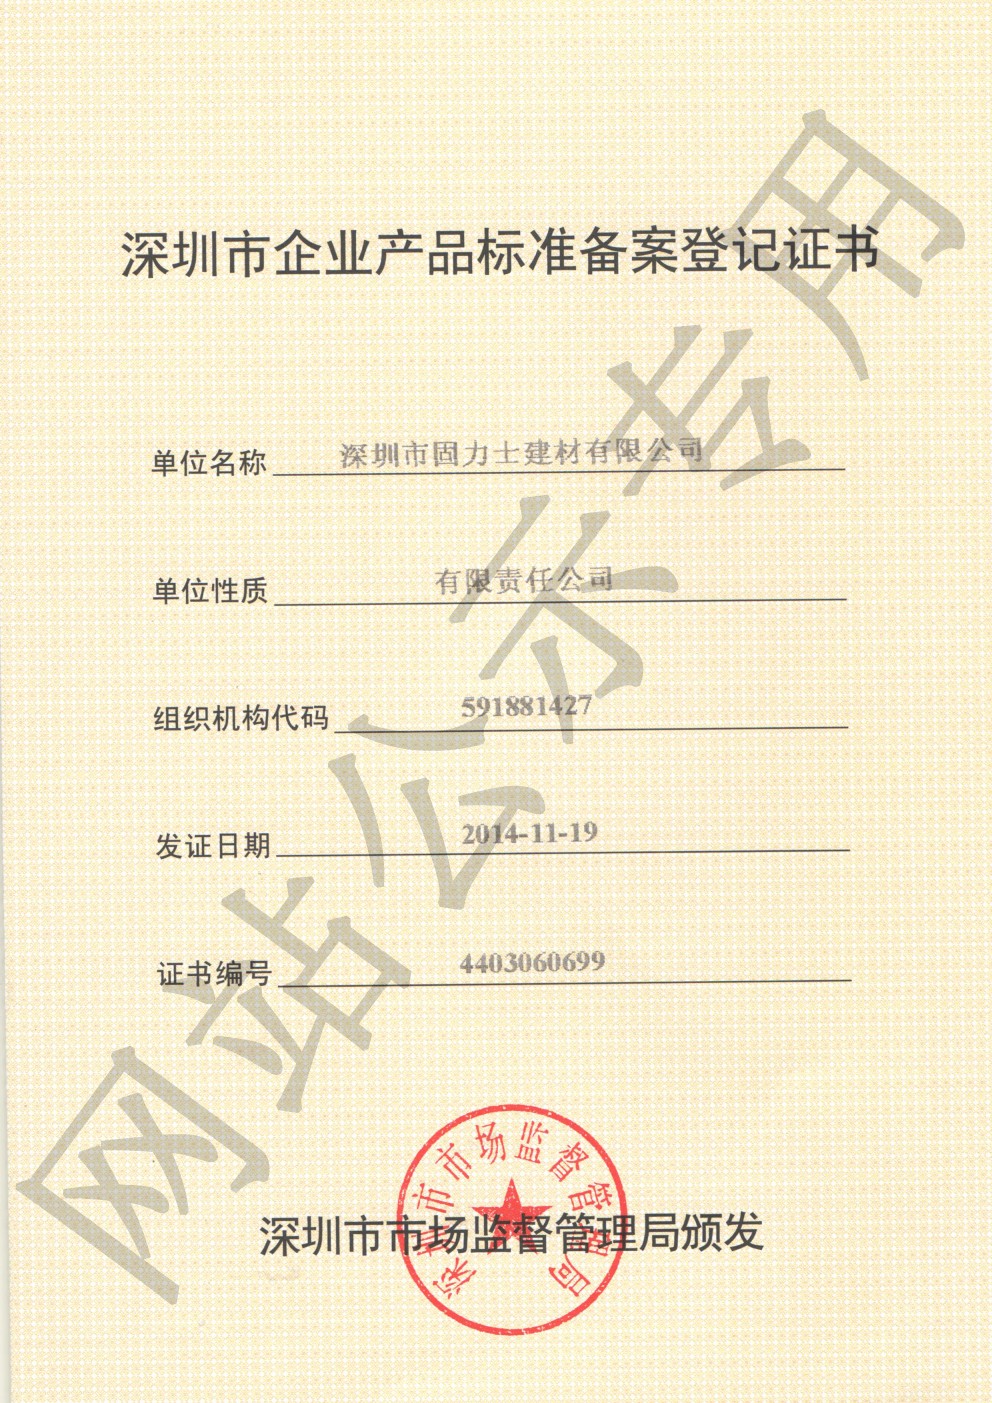 吴兴企业产品标准登记证书